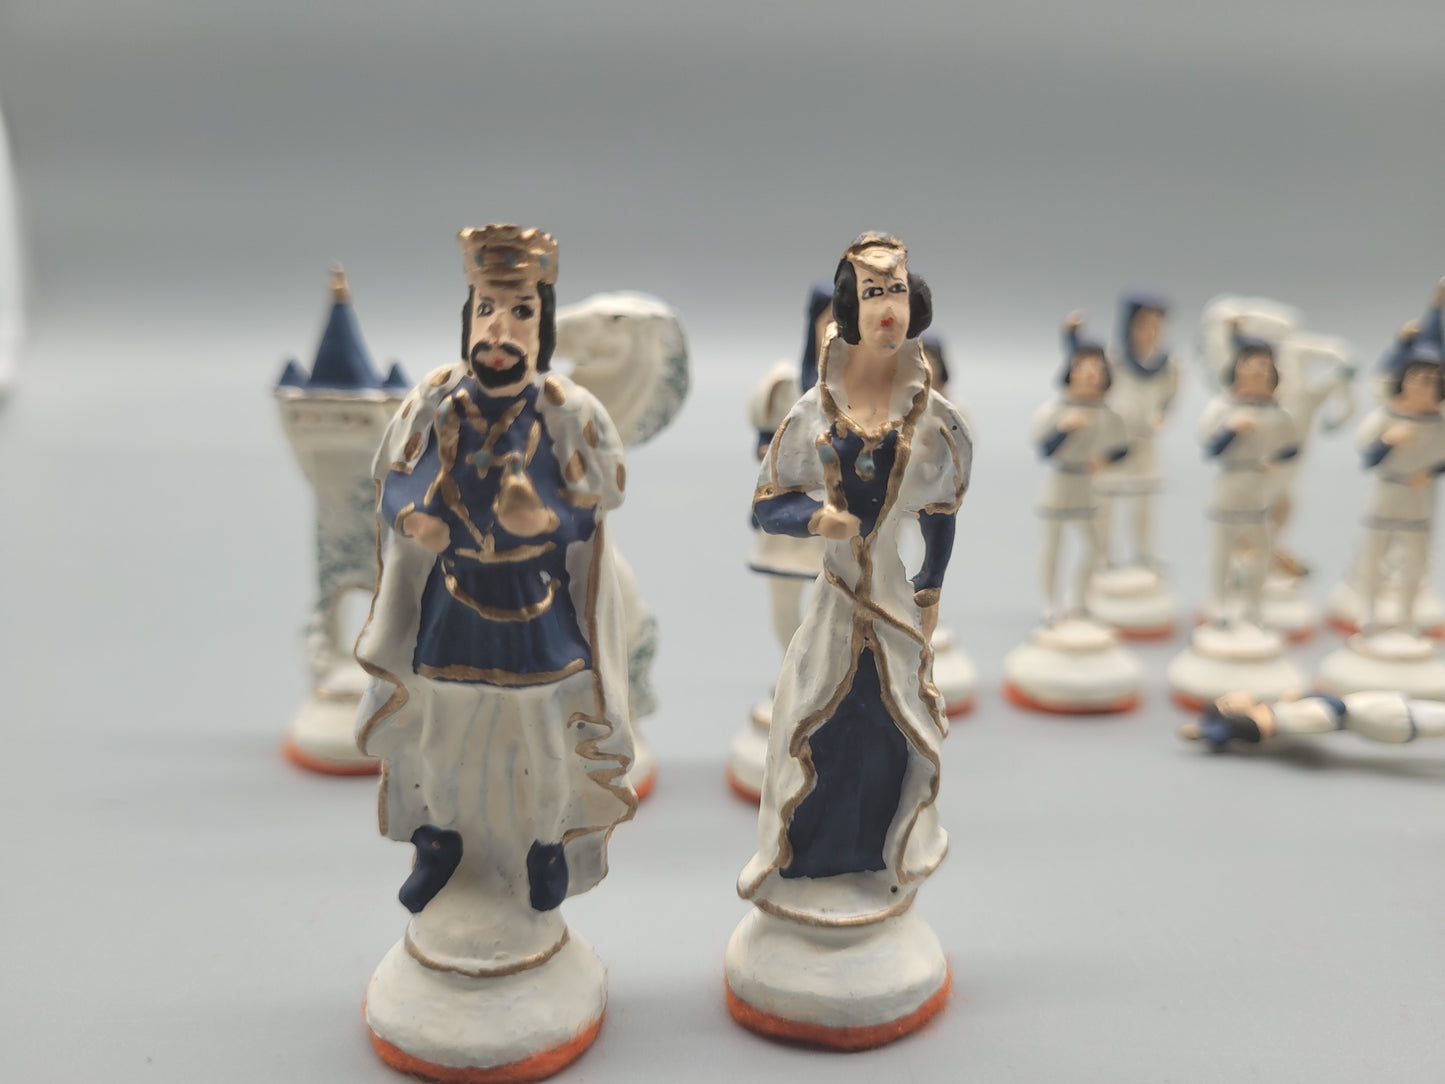 Schönes Altes Schachspiel 16 Zinn Schachfiguren Handbemalt